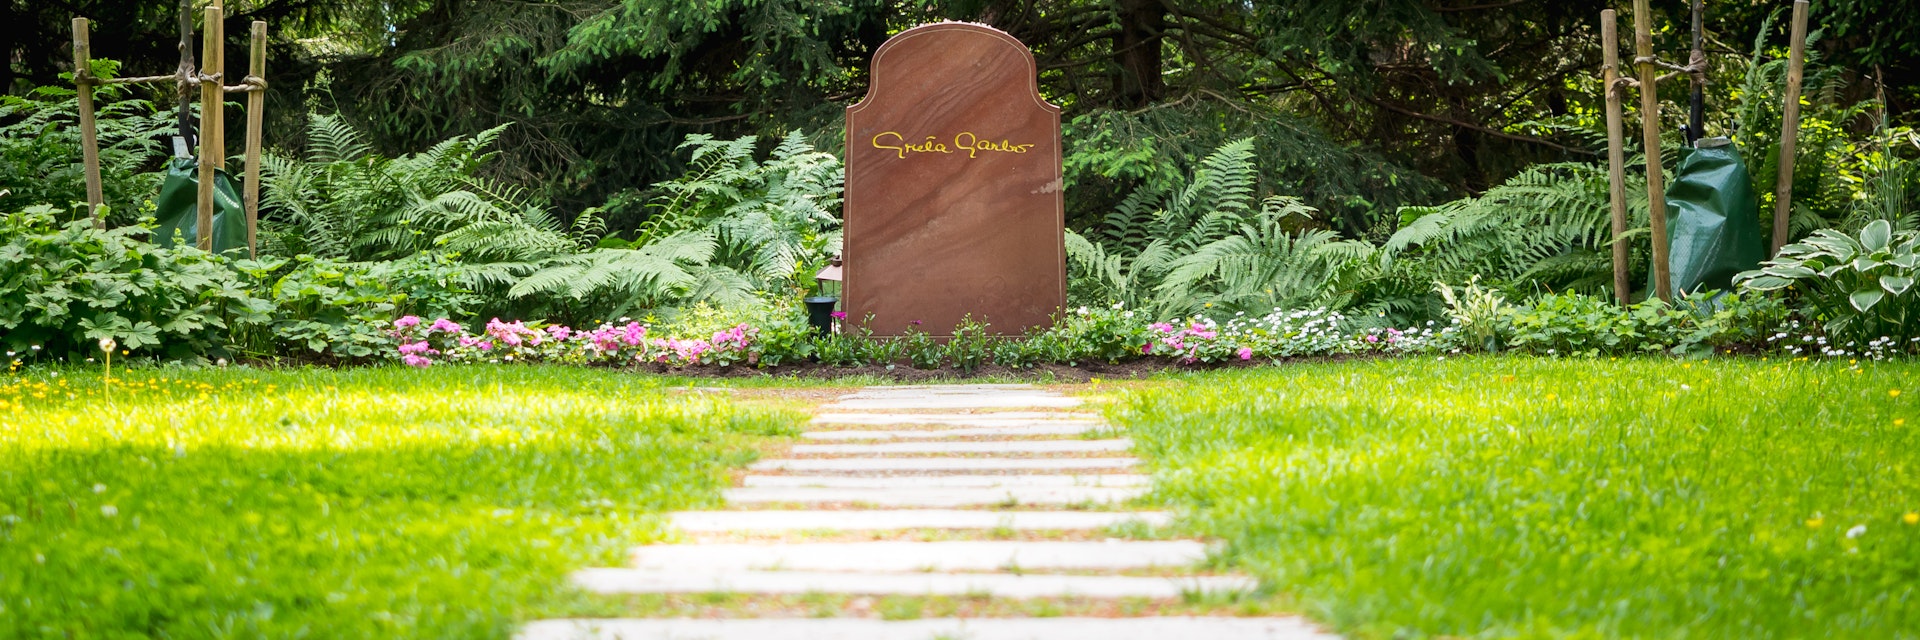 Greta Garbo's gravestone at Skogskyrkogården in Stockholm.